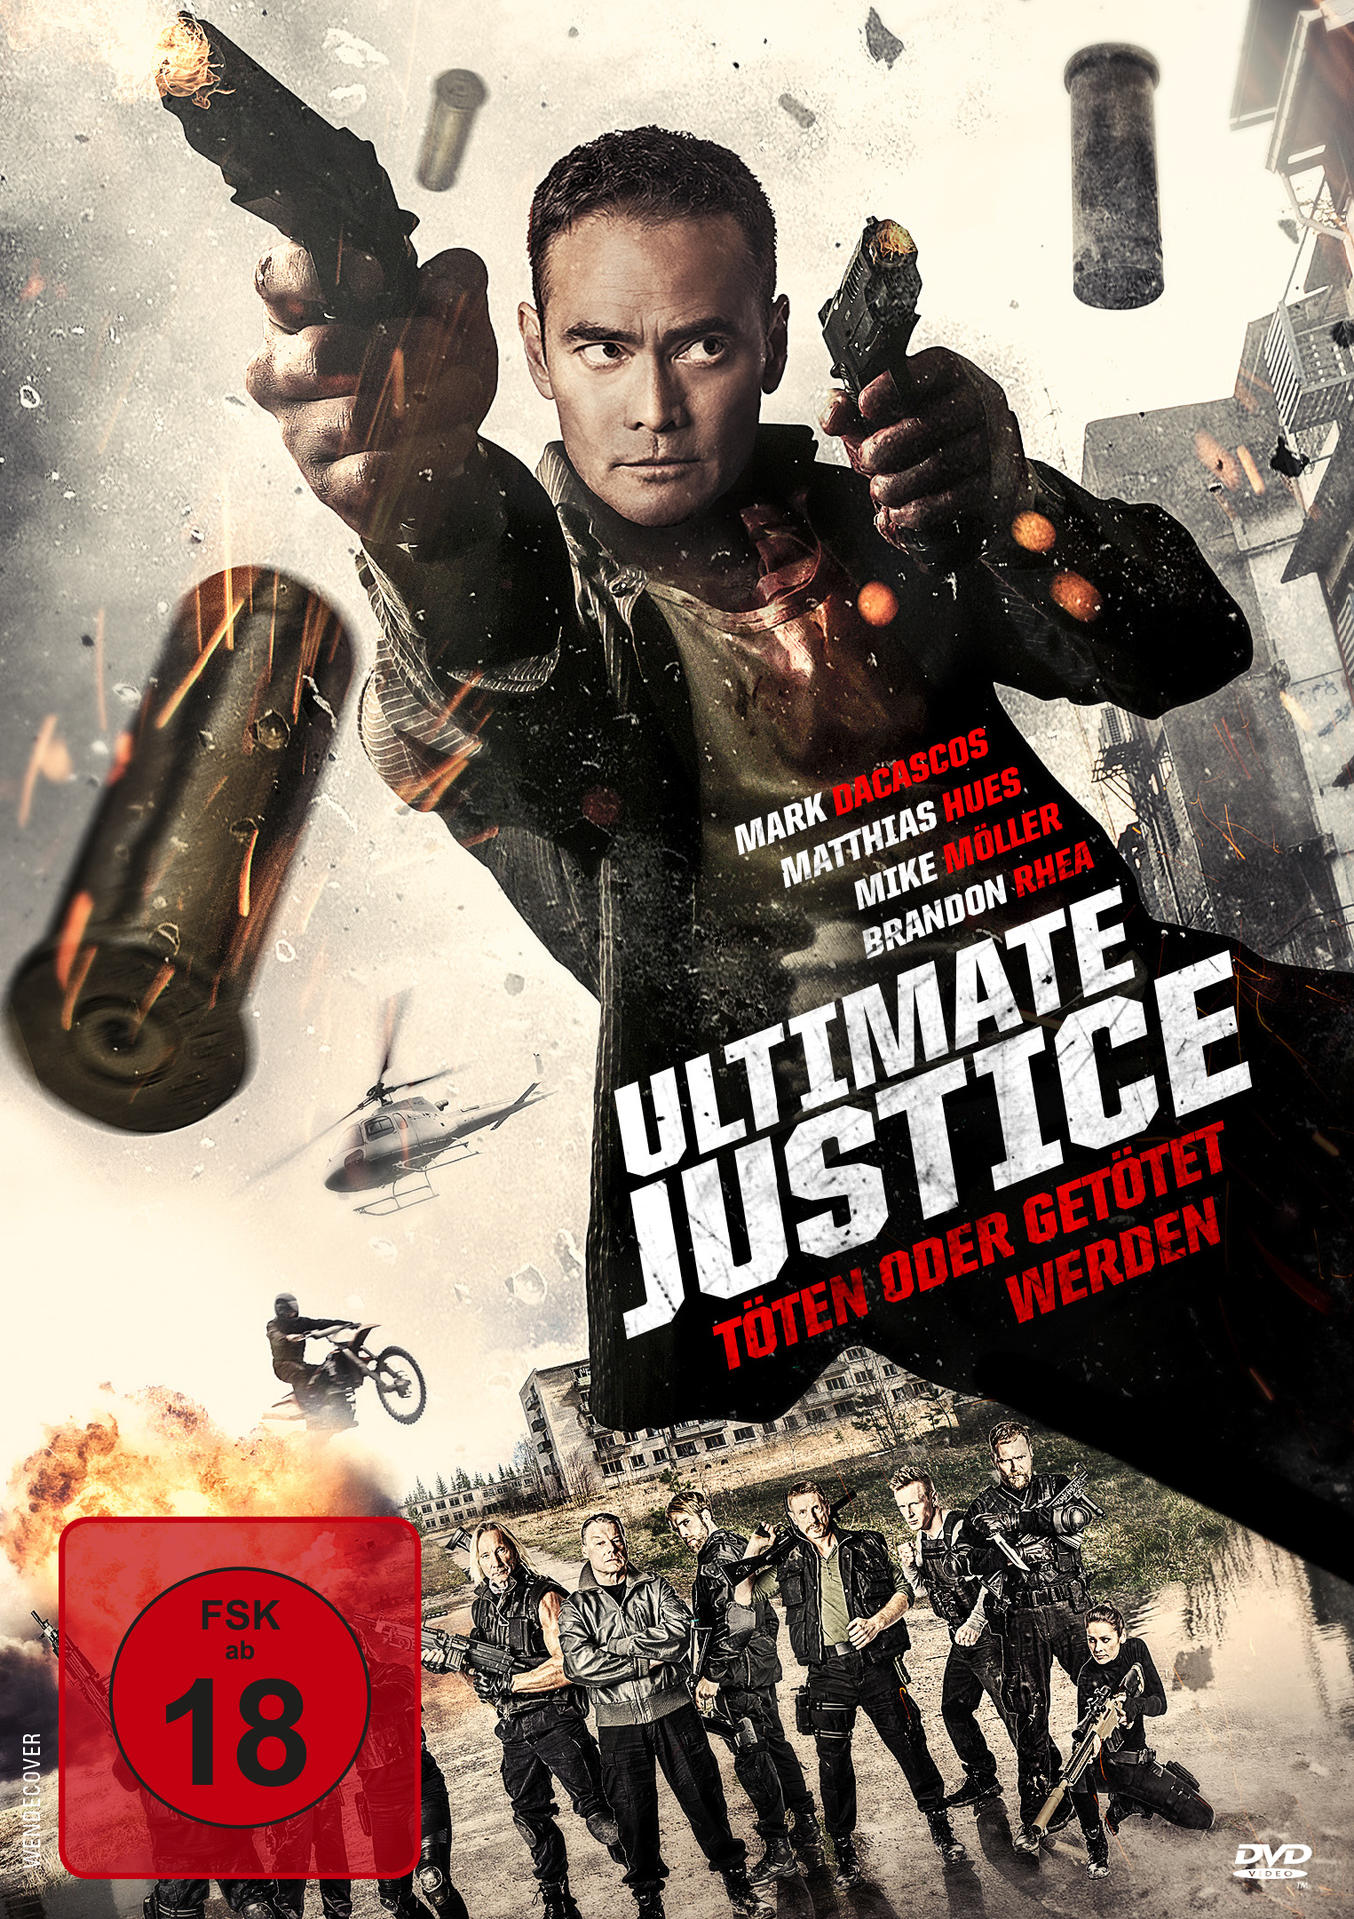 Töten oder werden Ultimate DVD - Justice getötet